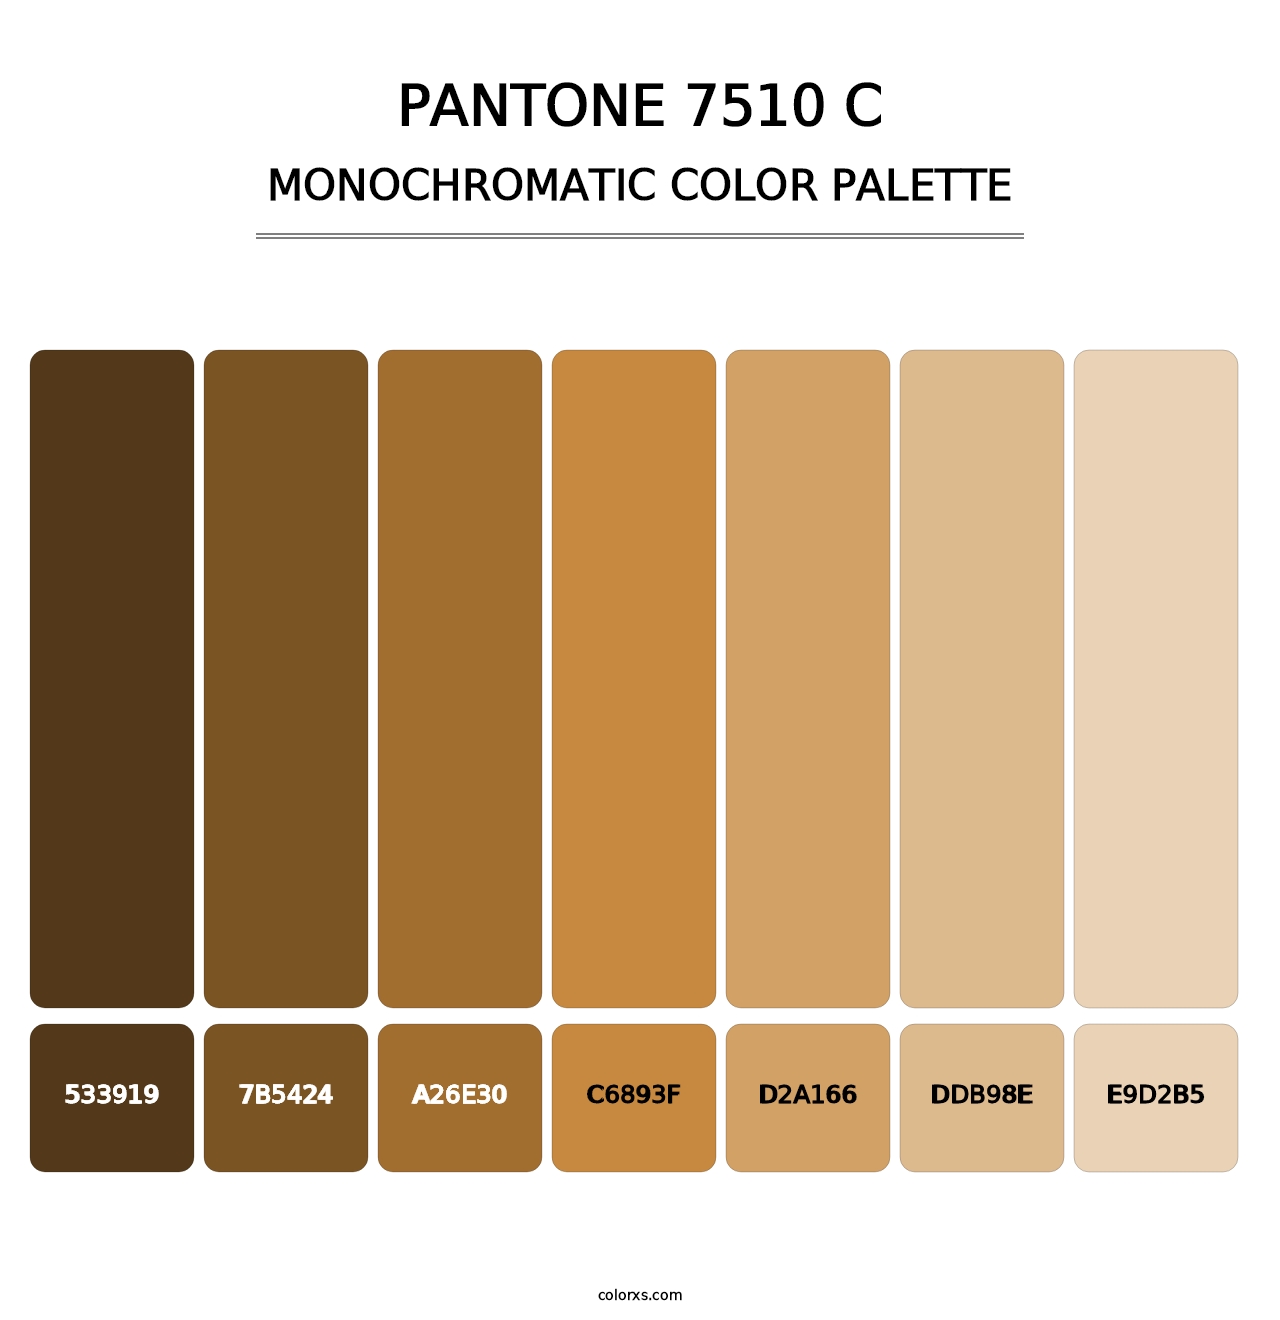 PANTONE 7510 C - Monochromatic Color Palette